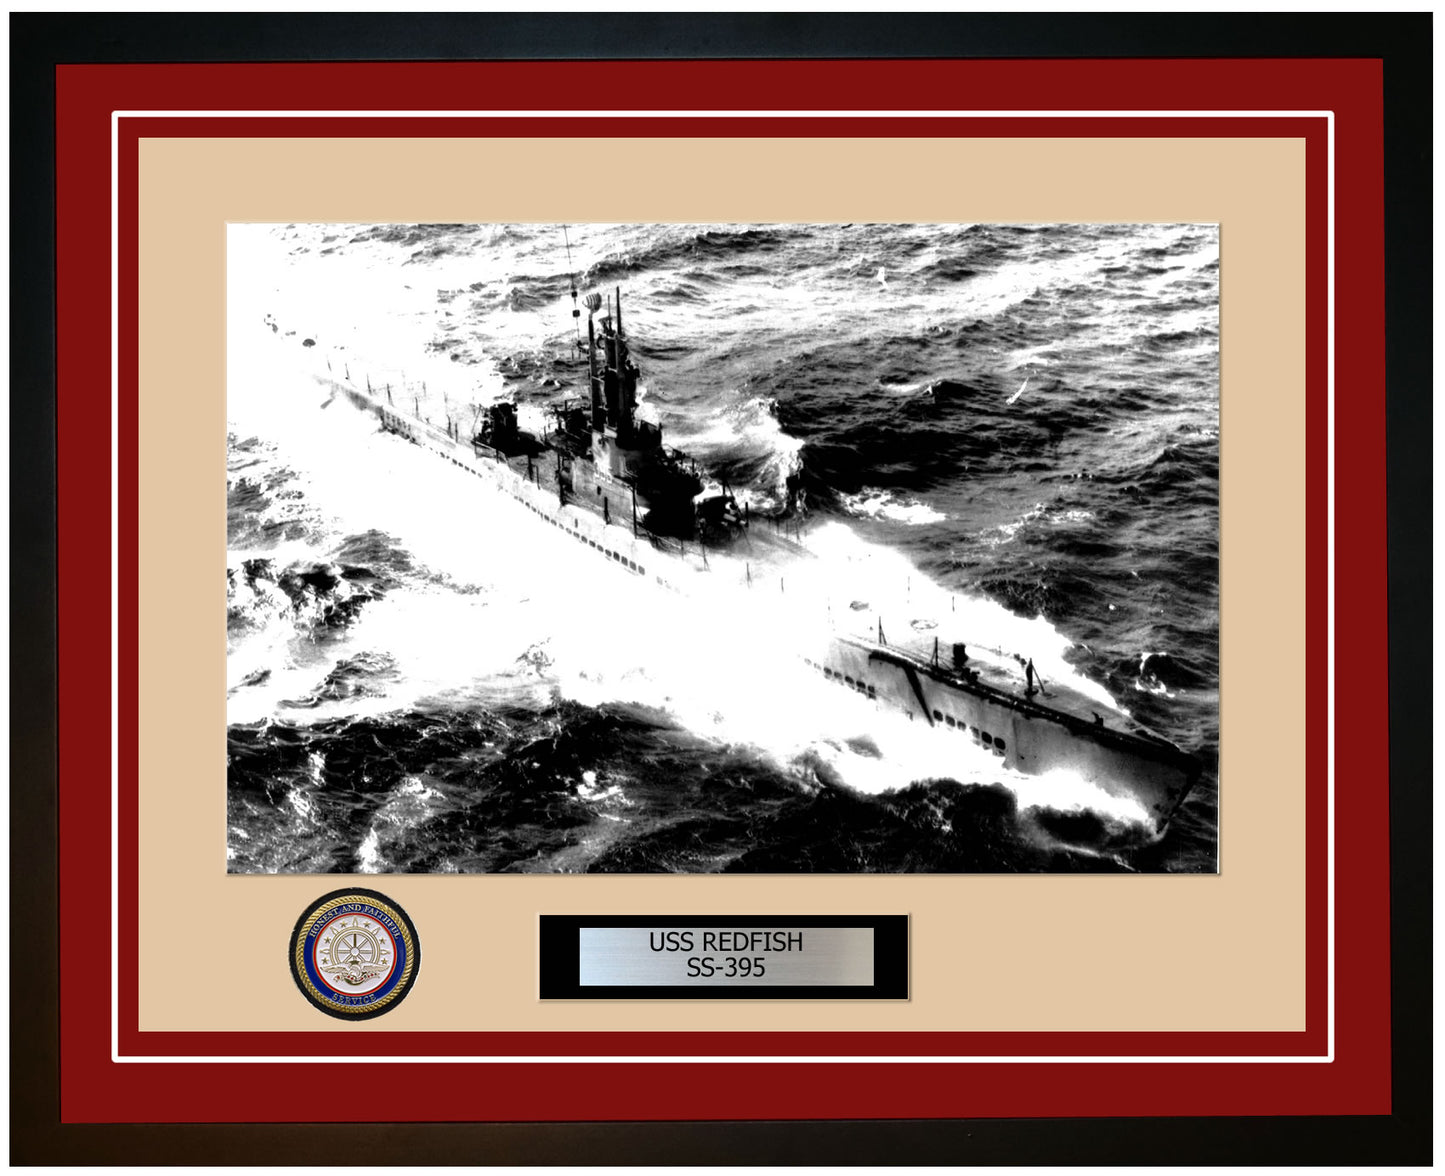 USS Redfish SS-395 Framed Navy Ship Photo Burgundy